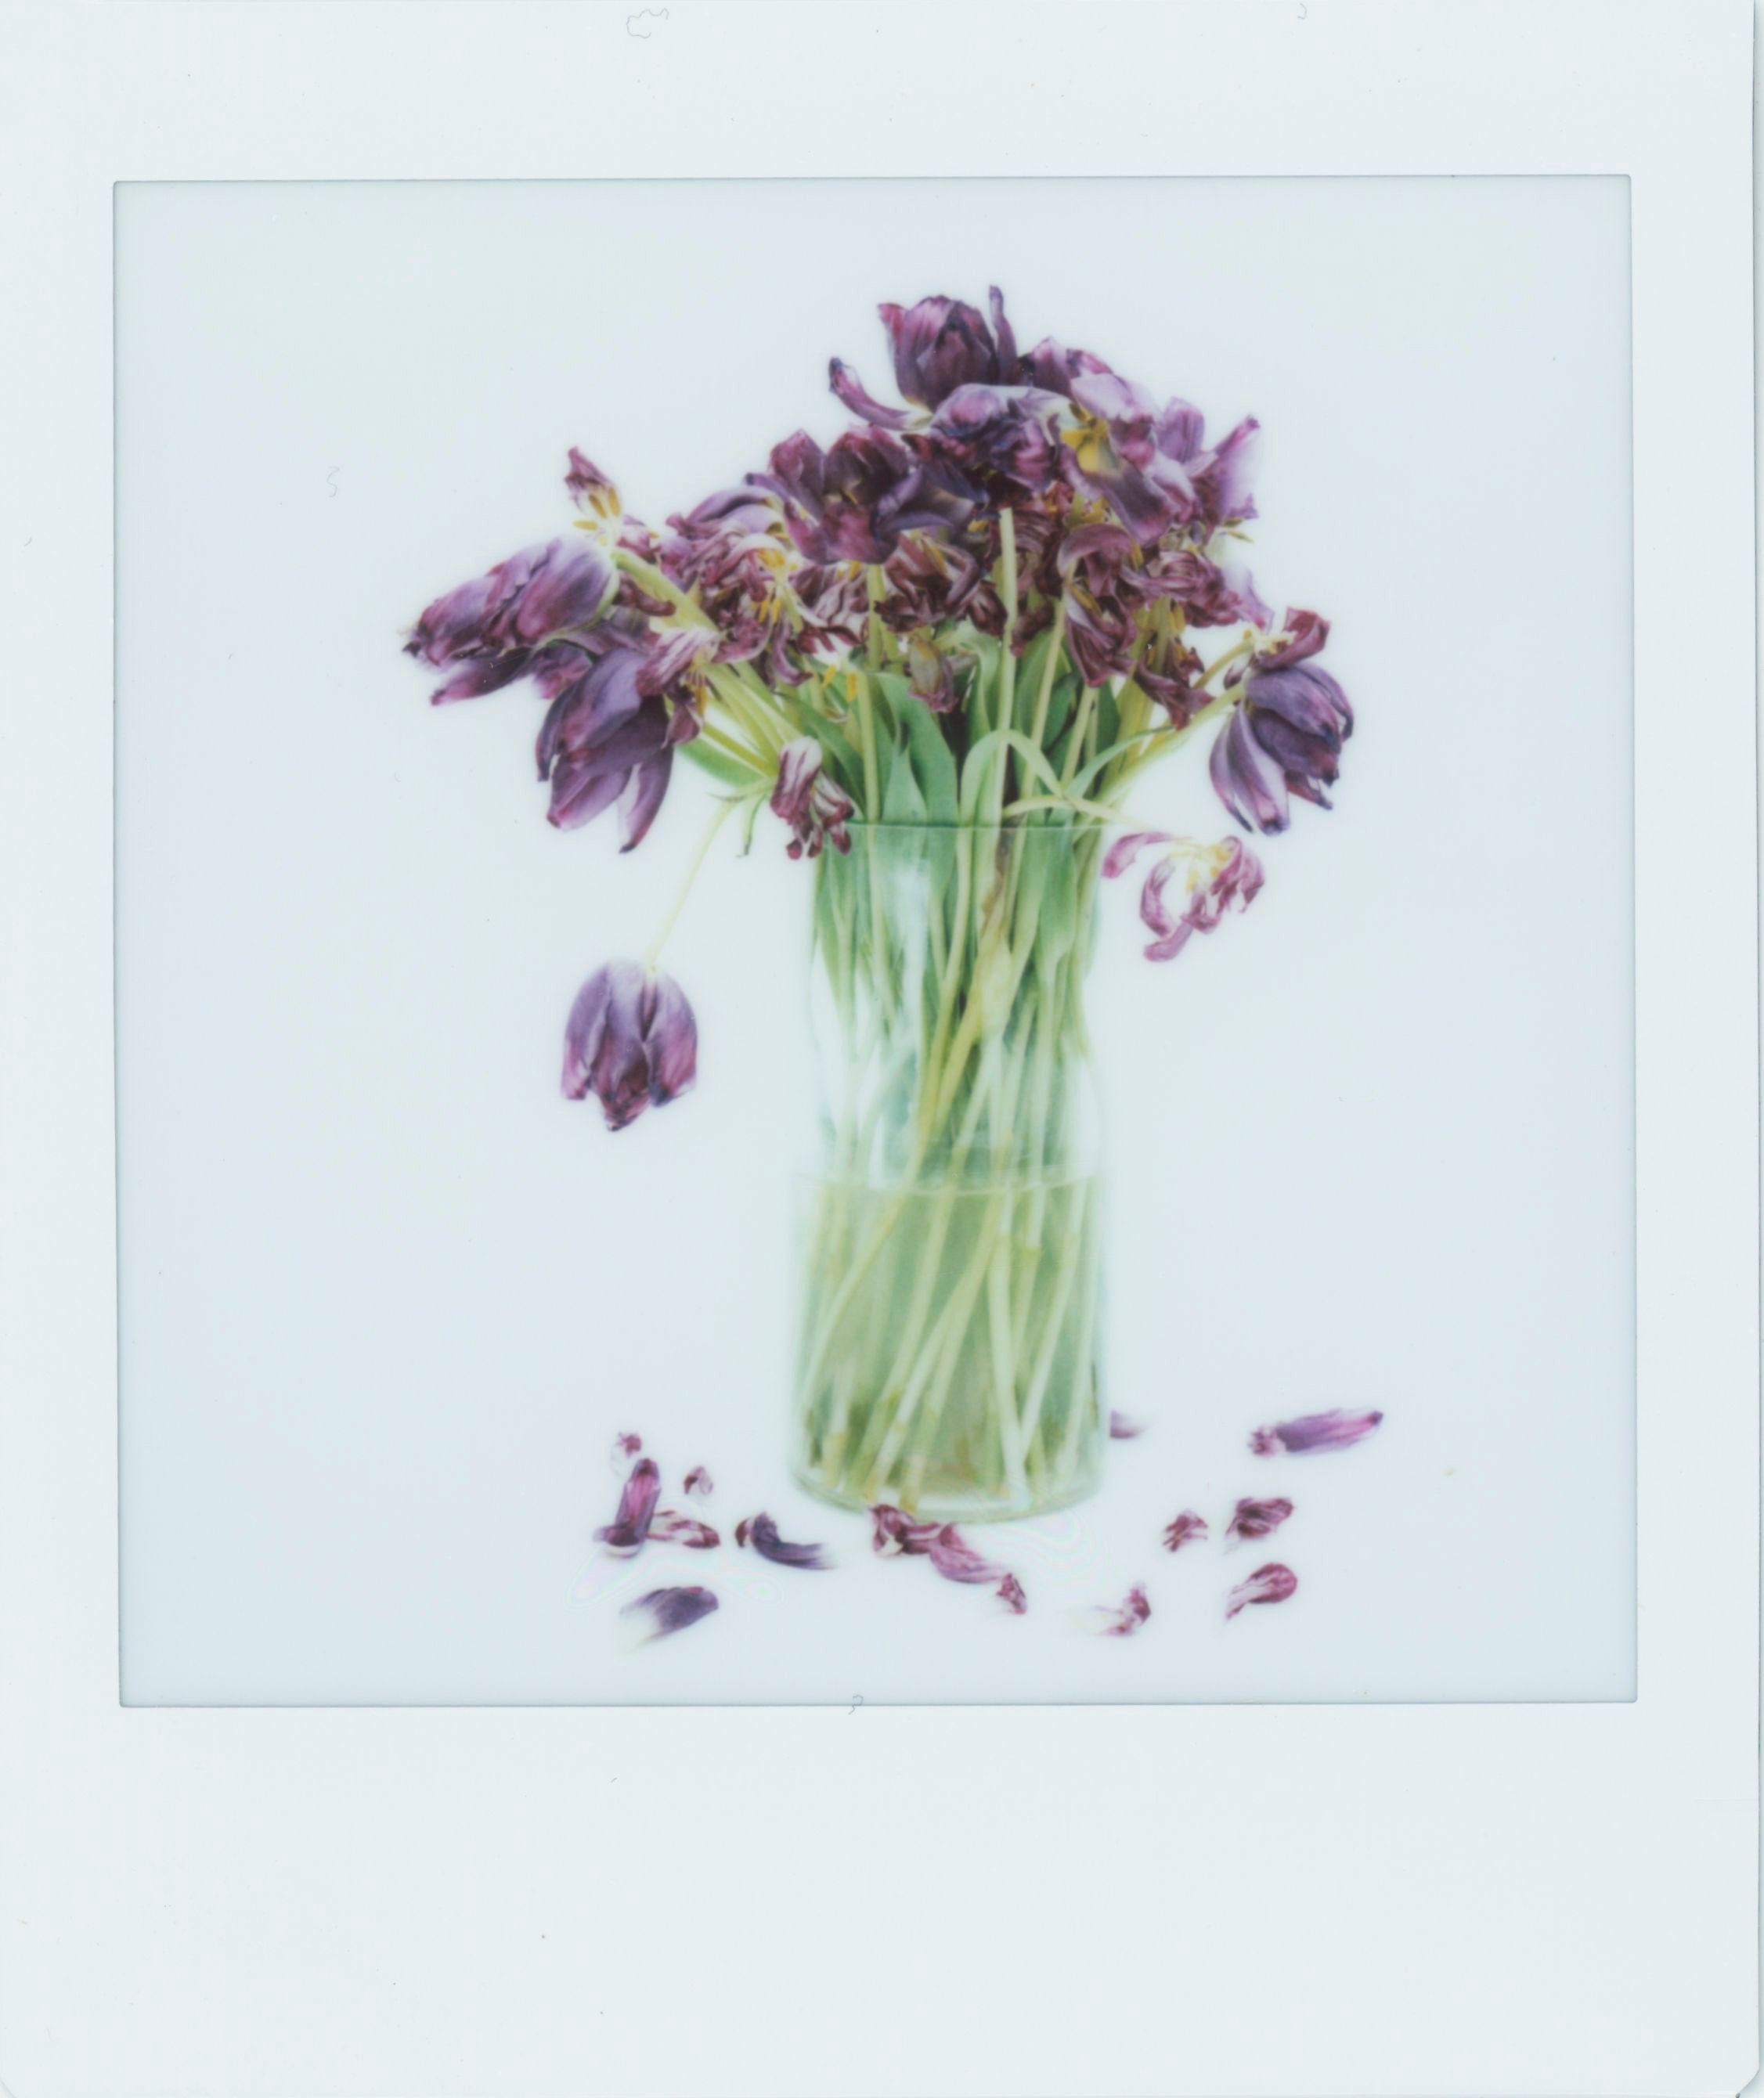 printed polaroid of a vase full of purple flowers